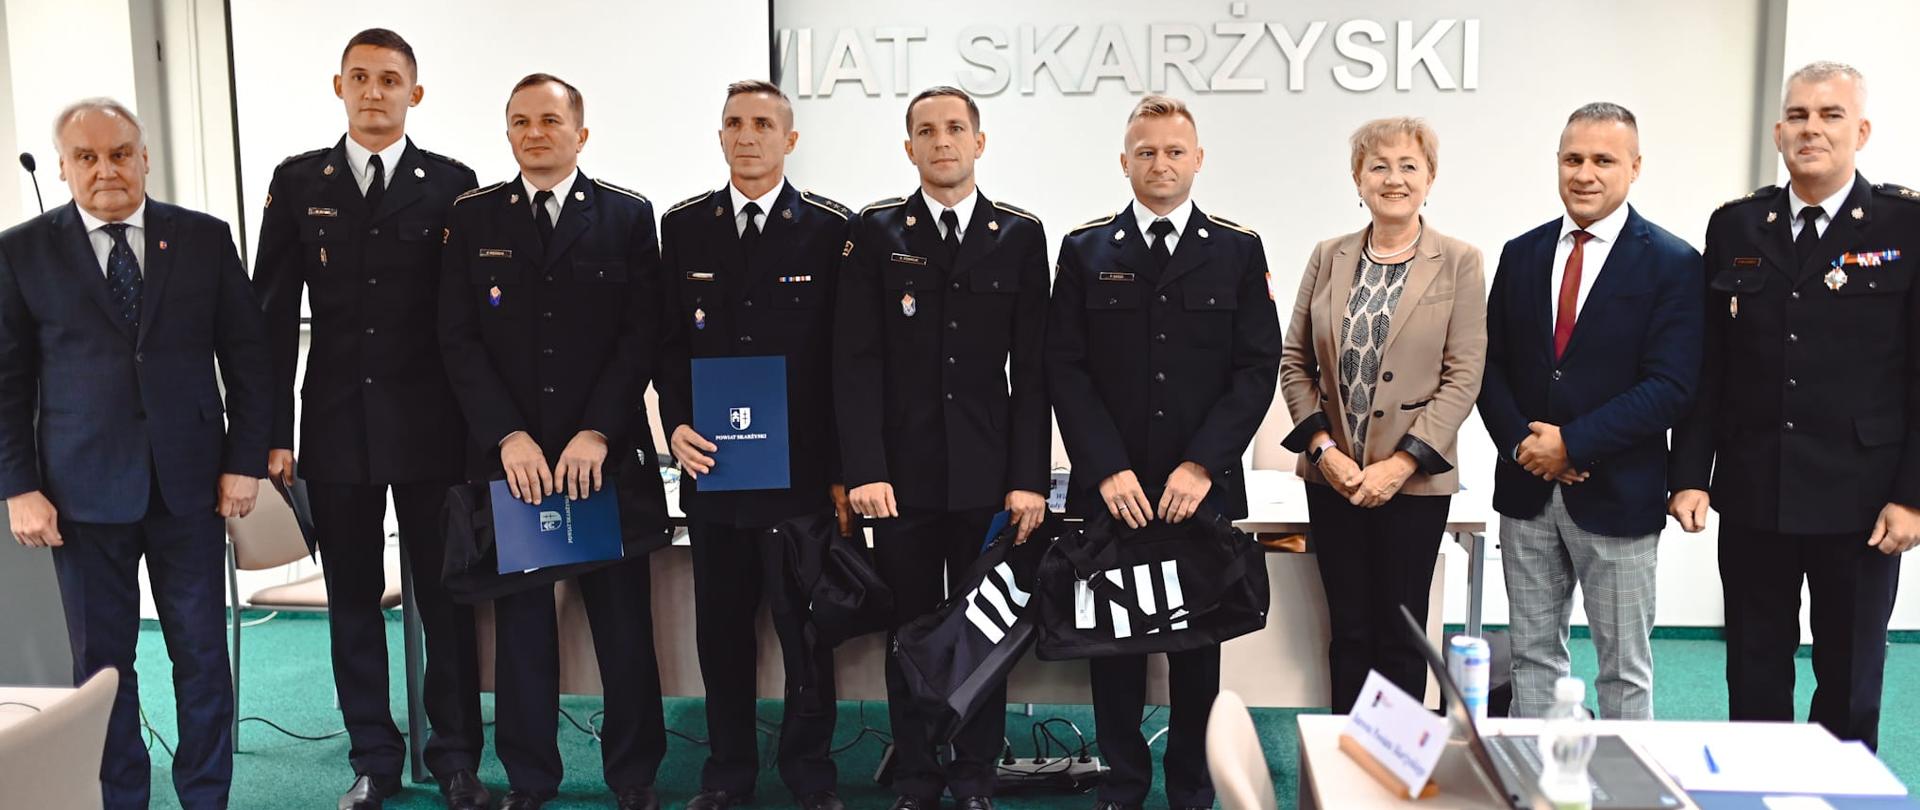 Strażacy nagrodzeni przez starostwo powiatowe w Skarżysku-kamiennej pozują do zdjęcia ze swoim szefem, starostą i radnymi.